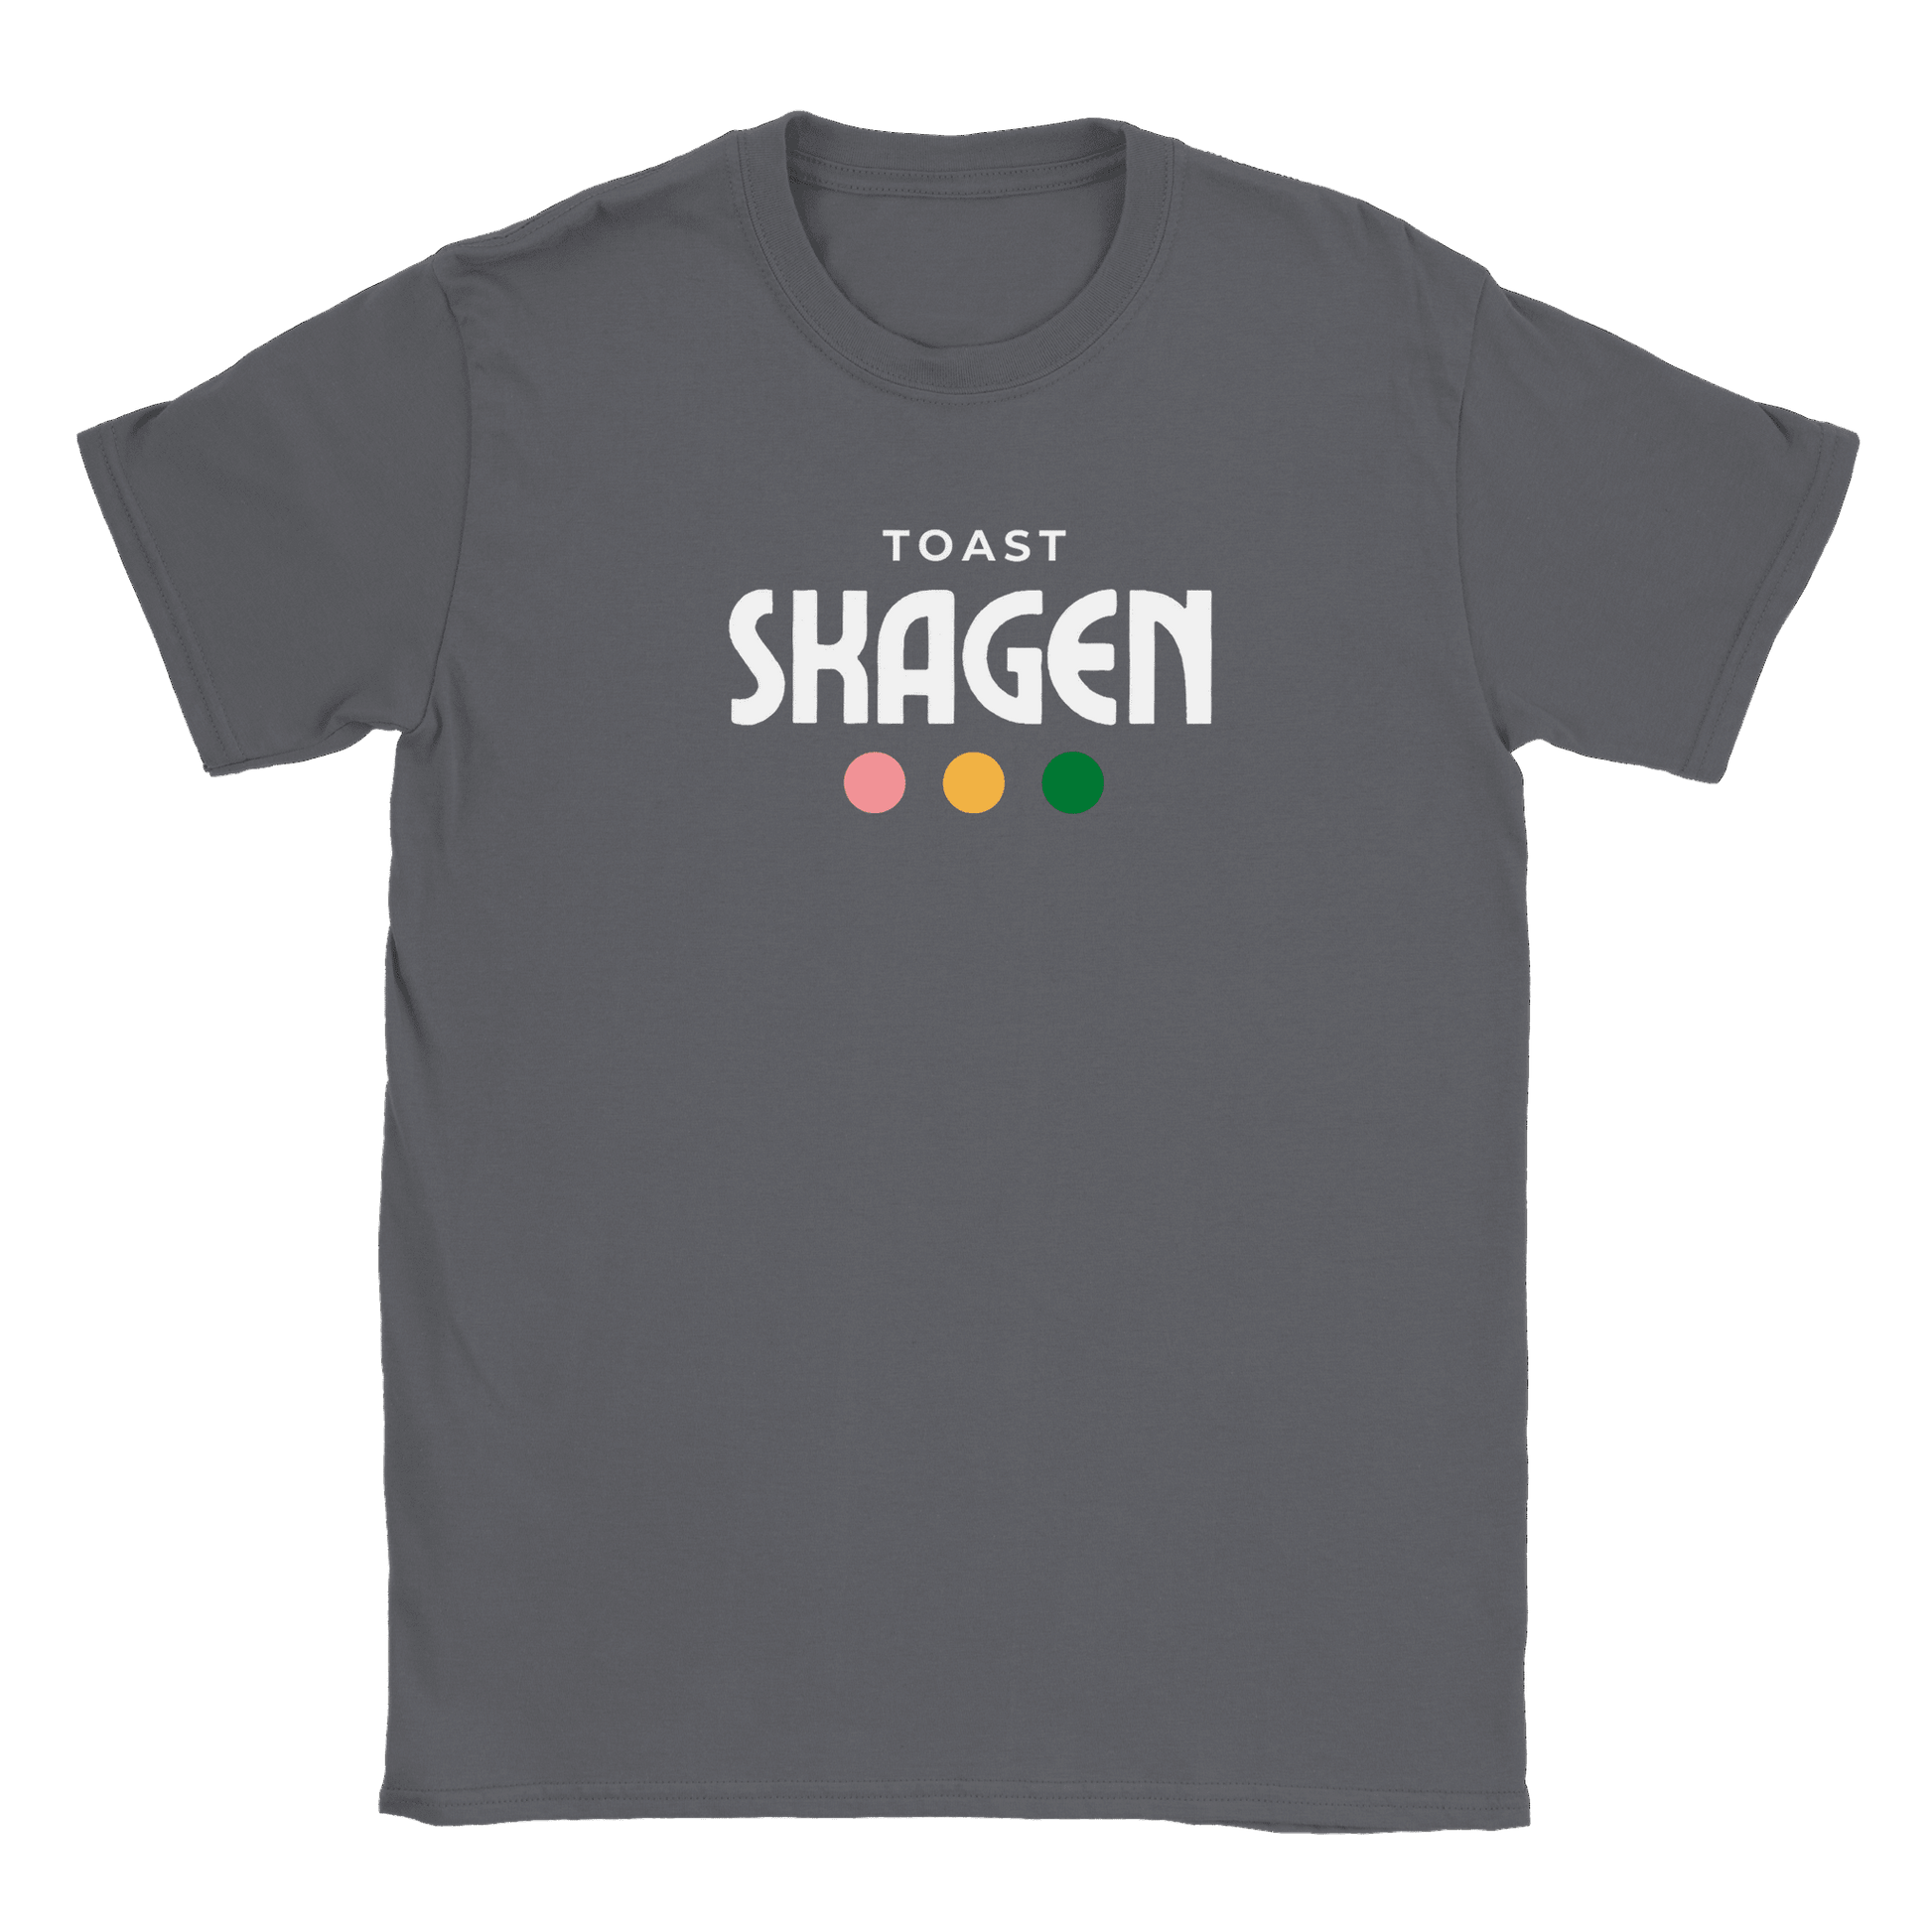 Toast Skagen - T-shirt Charcoal